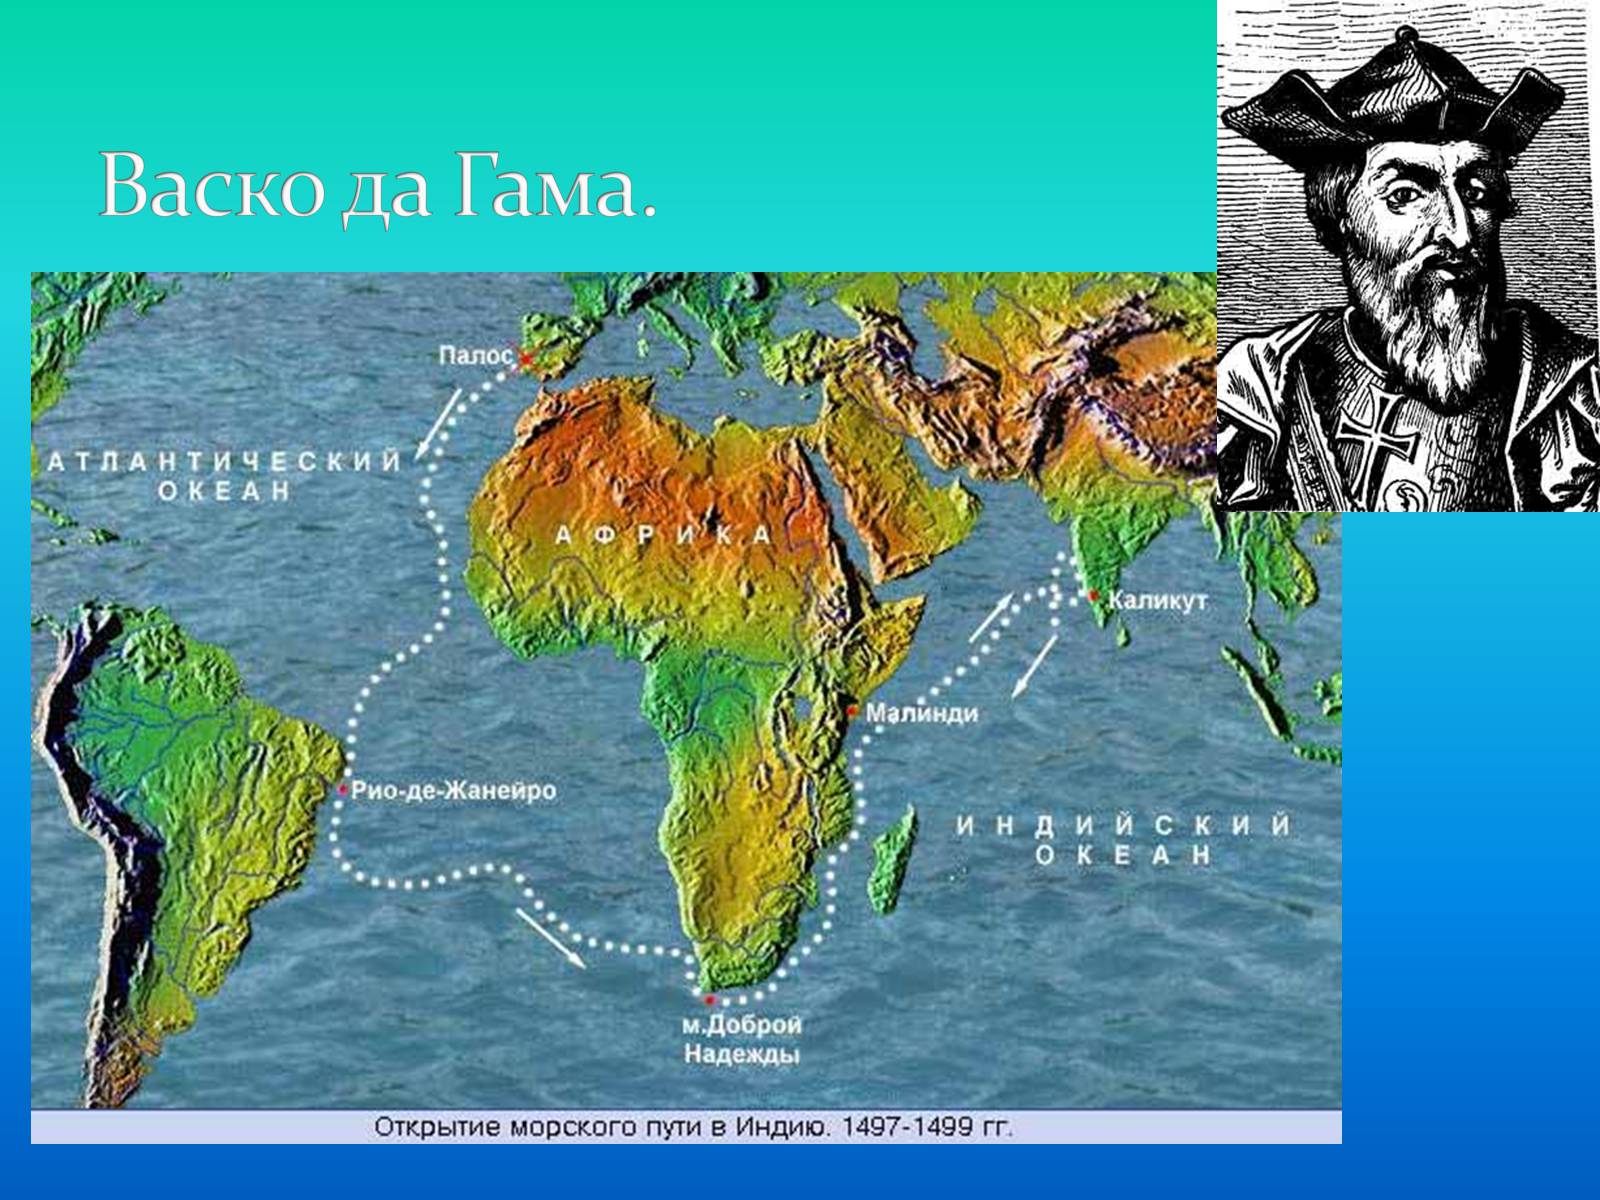 Первый путь в индию. ВАСКО да Гама открыл морской путь в Индию. ВАСКО да Гама Атлантический океан. Морской путь в Индию ВАСКО да Гама на карте. Маршрут ВАСКО да Гама Атлантический океан.